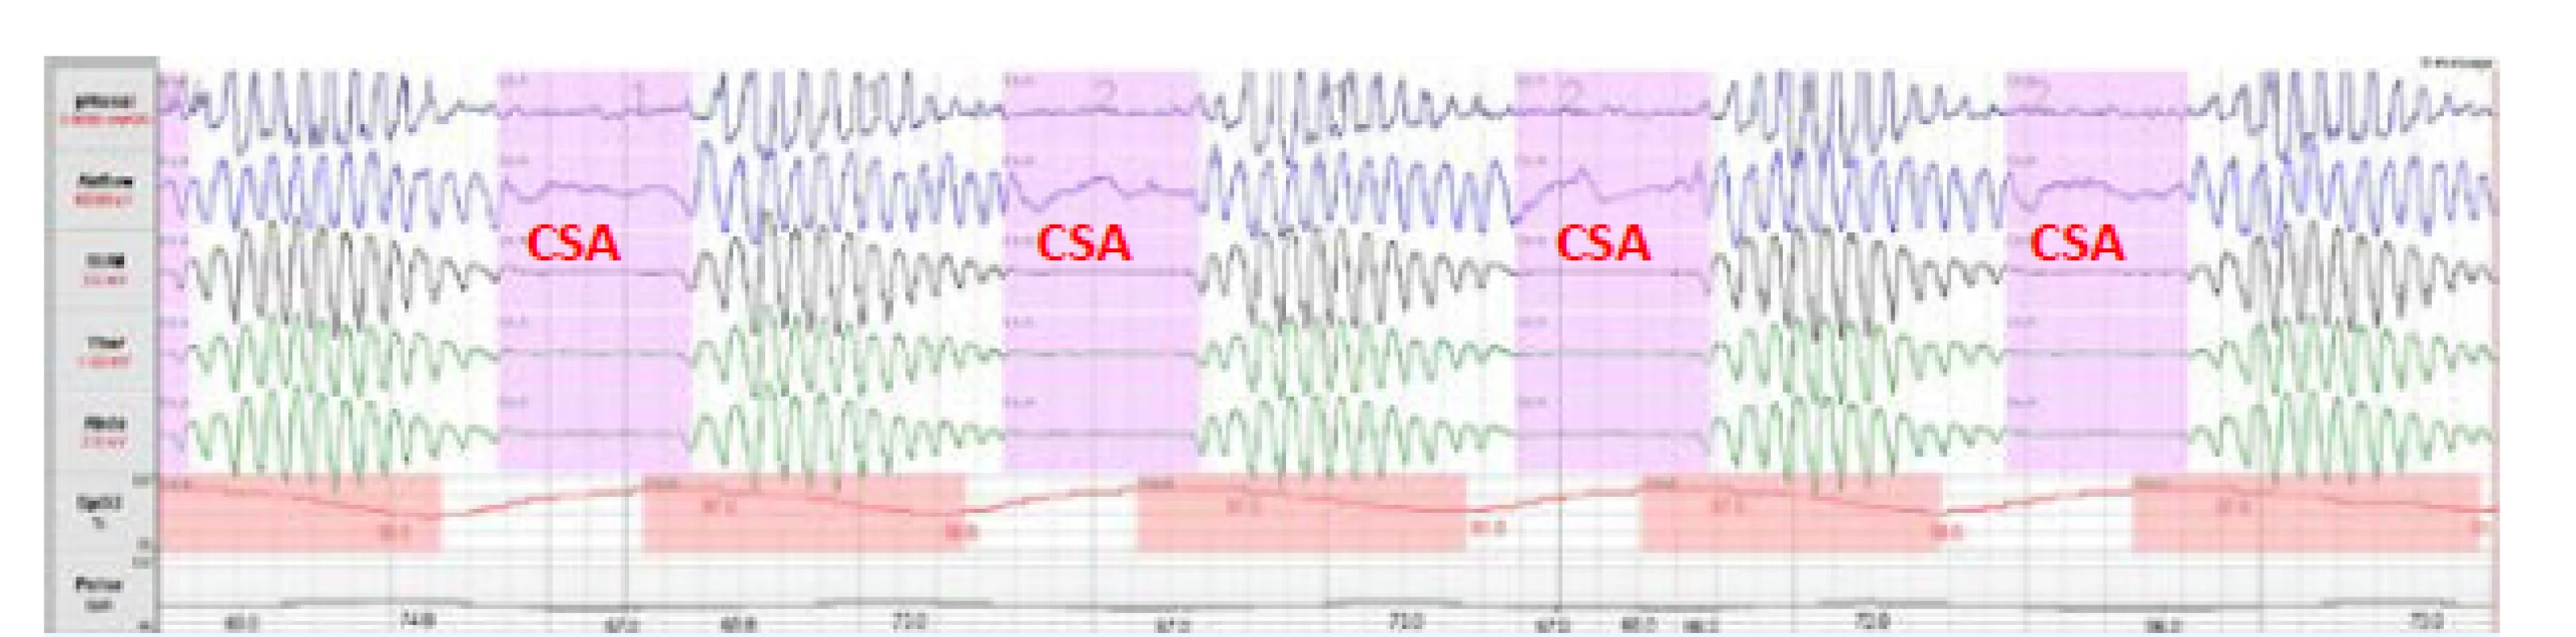 Centrální spánková apnoe (CSA)